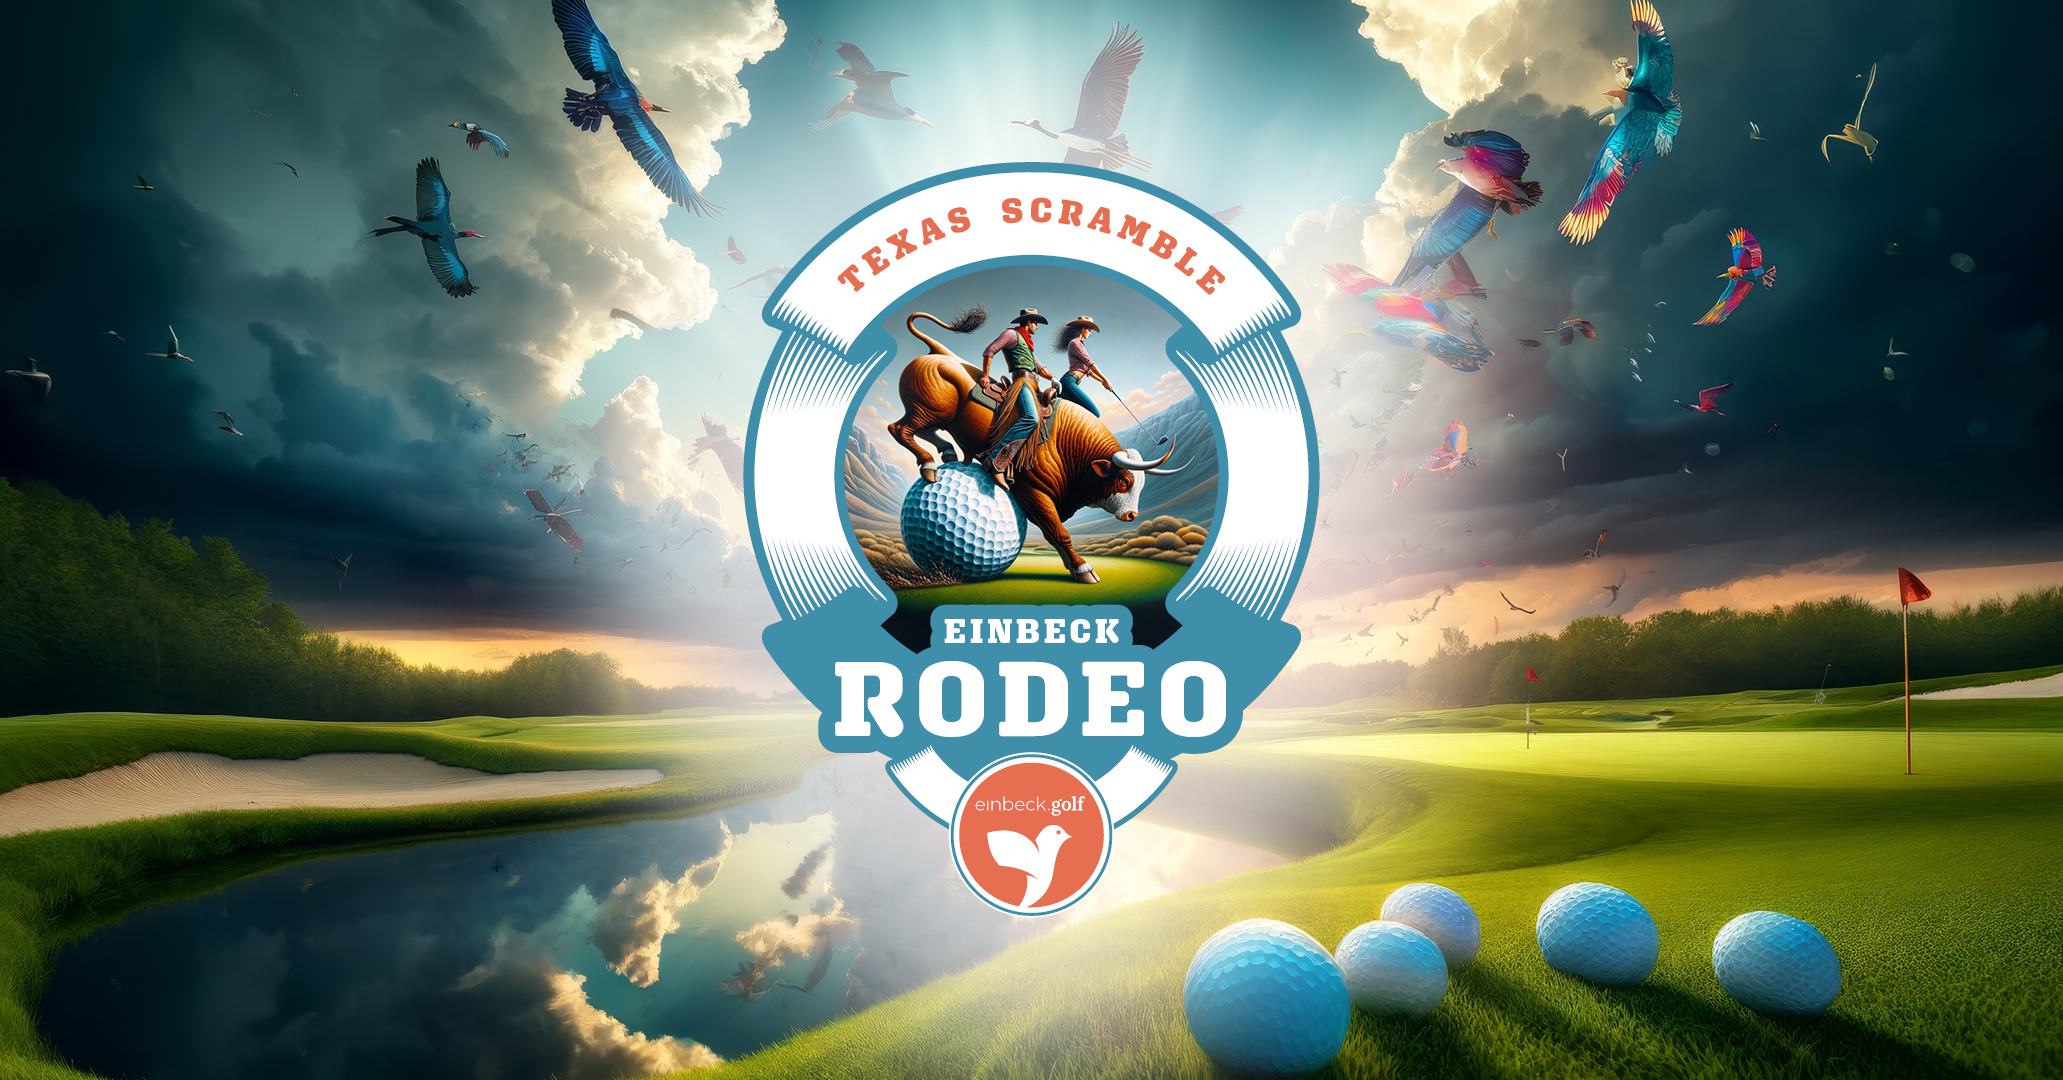 Einbeck Rodeo: Texas Scramble in seiner höchsten Vollendung